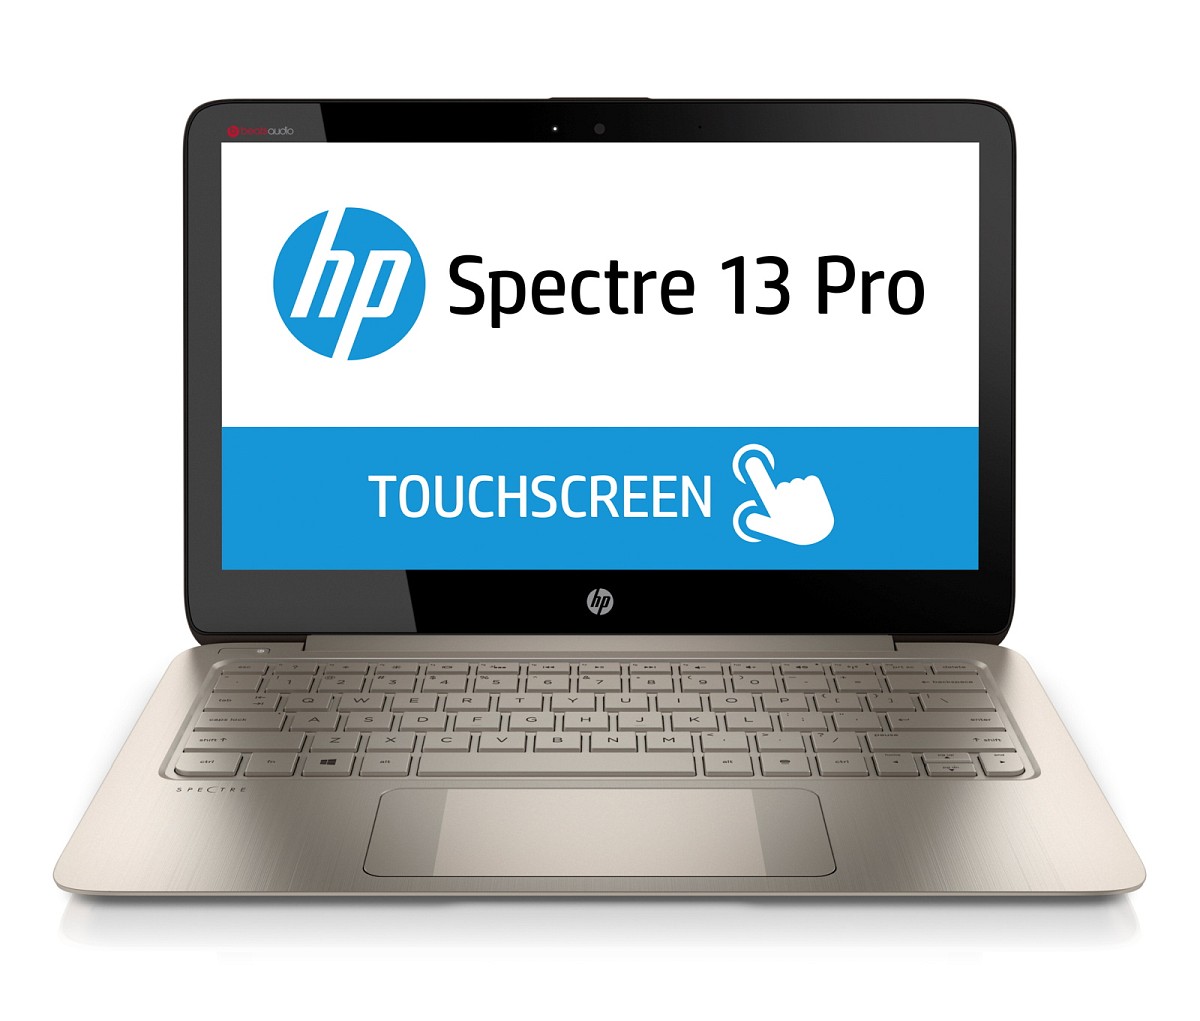 HP Spectre 13 Pro (F1N44EA)